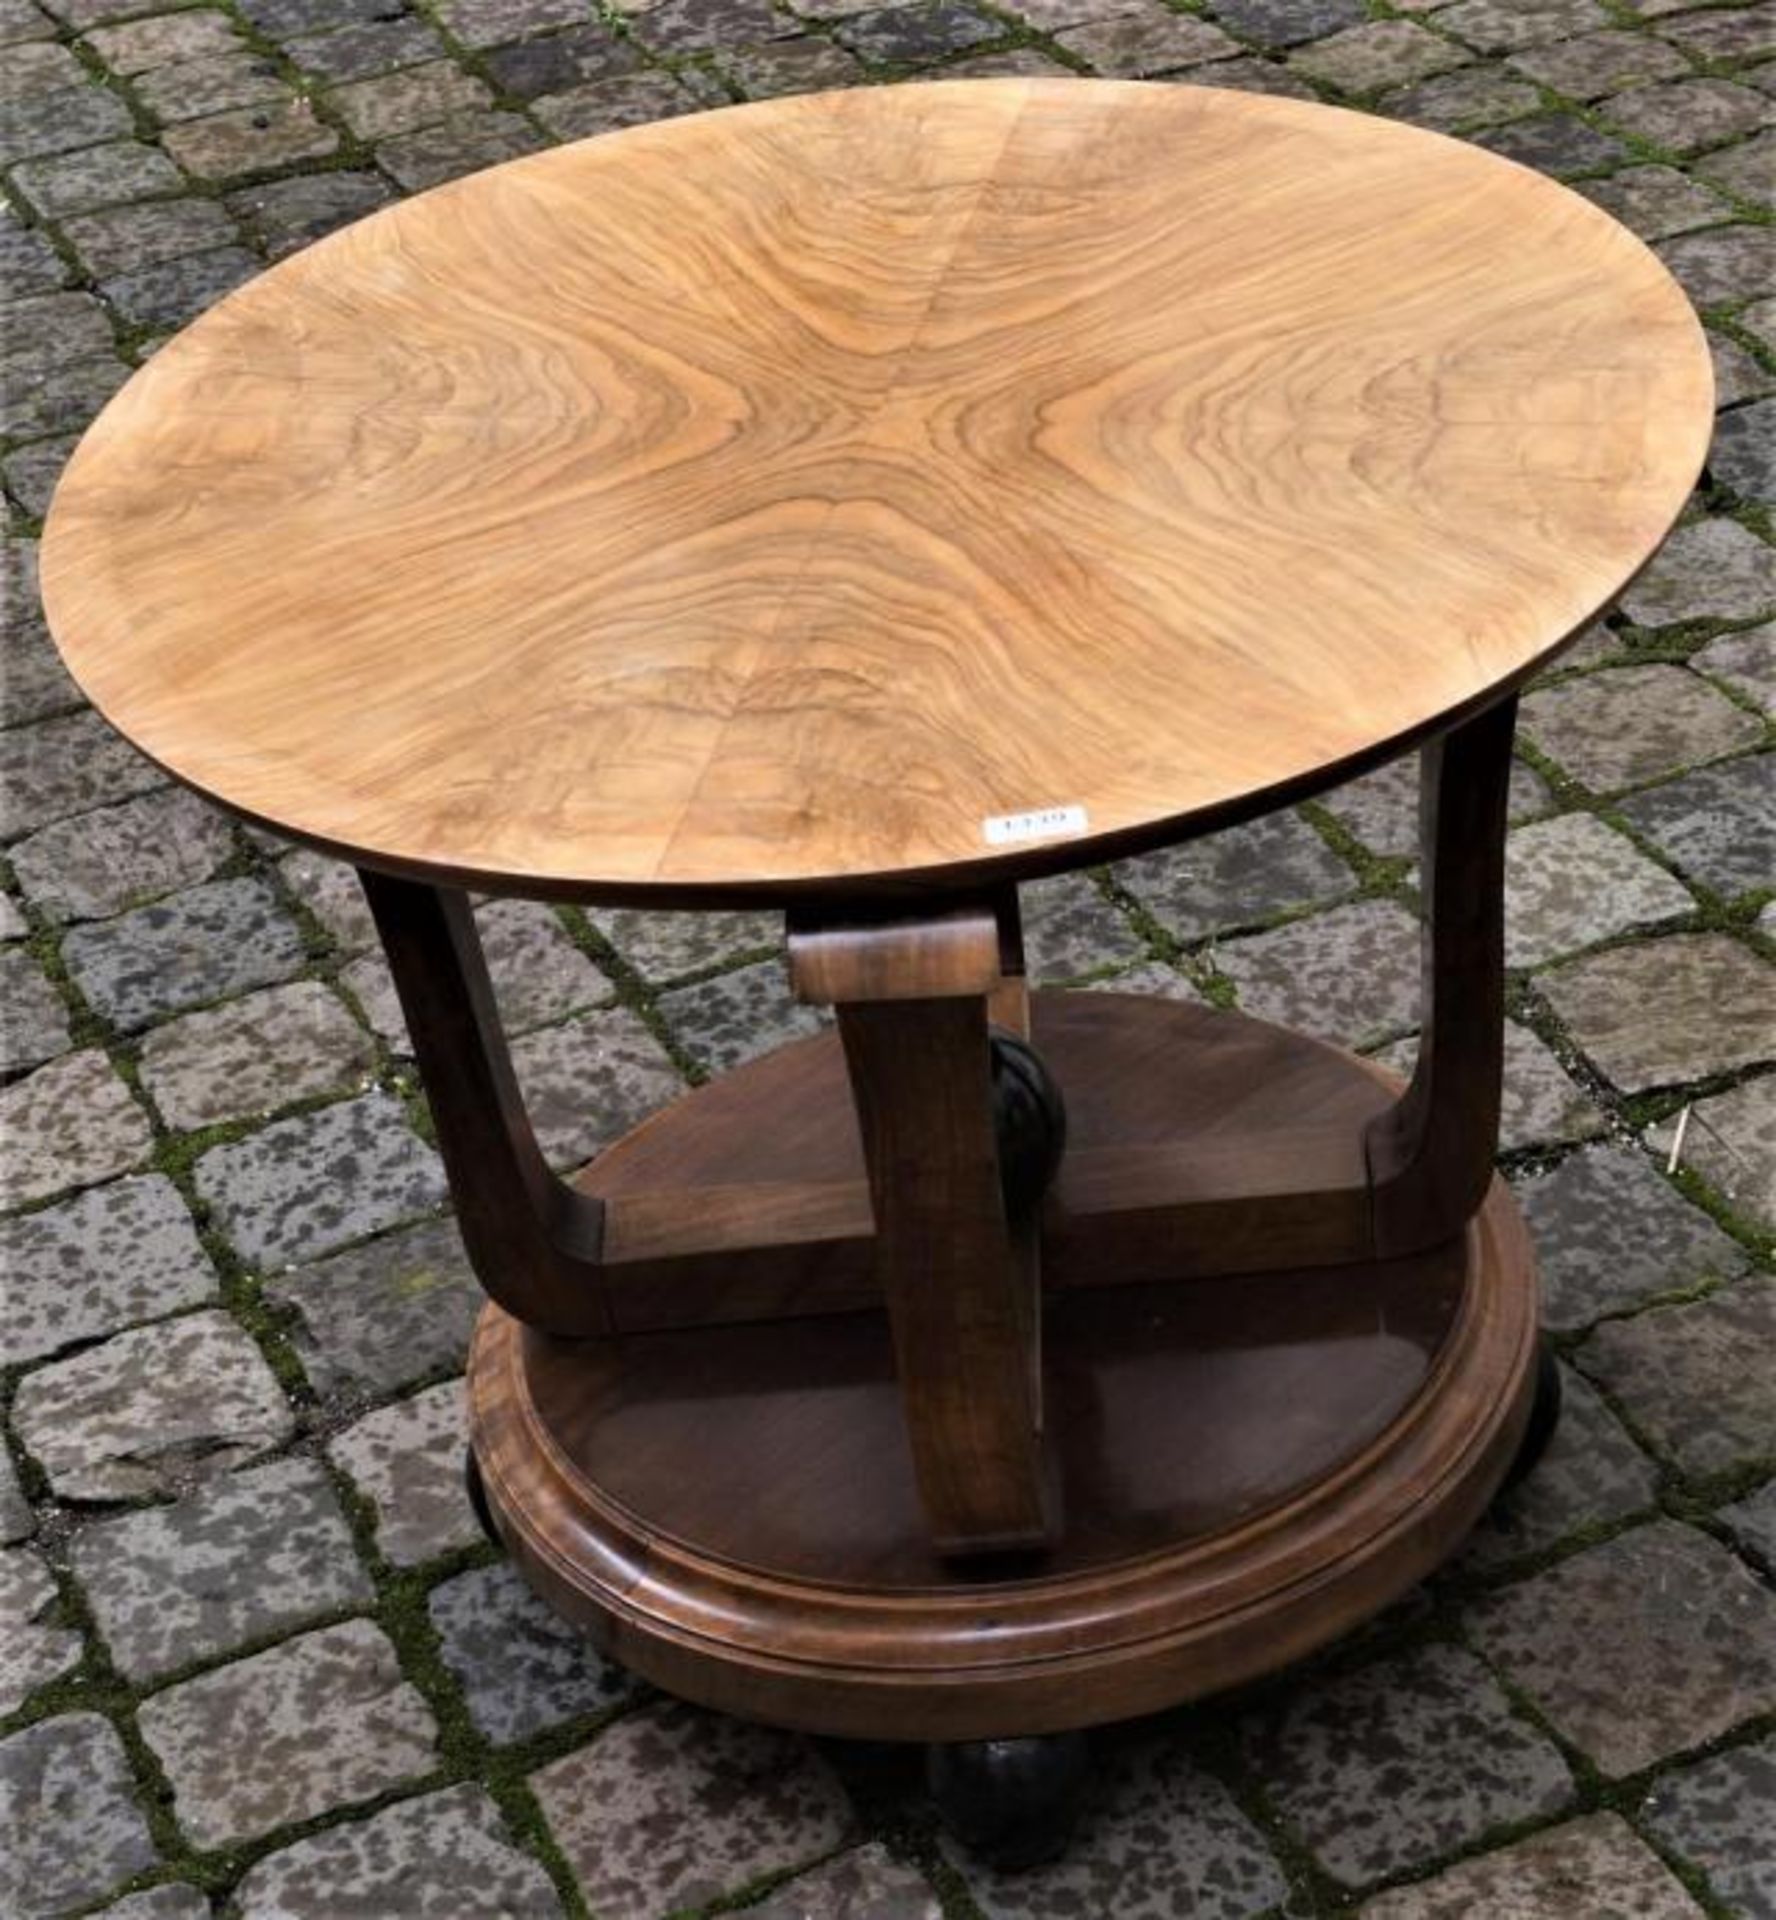 Round rosewood table, art deco, h. 54 cm, diam. 63 cm.